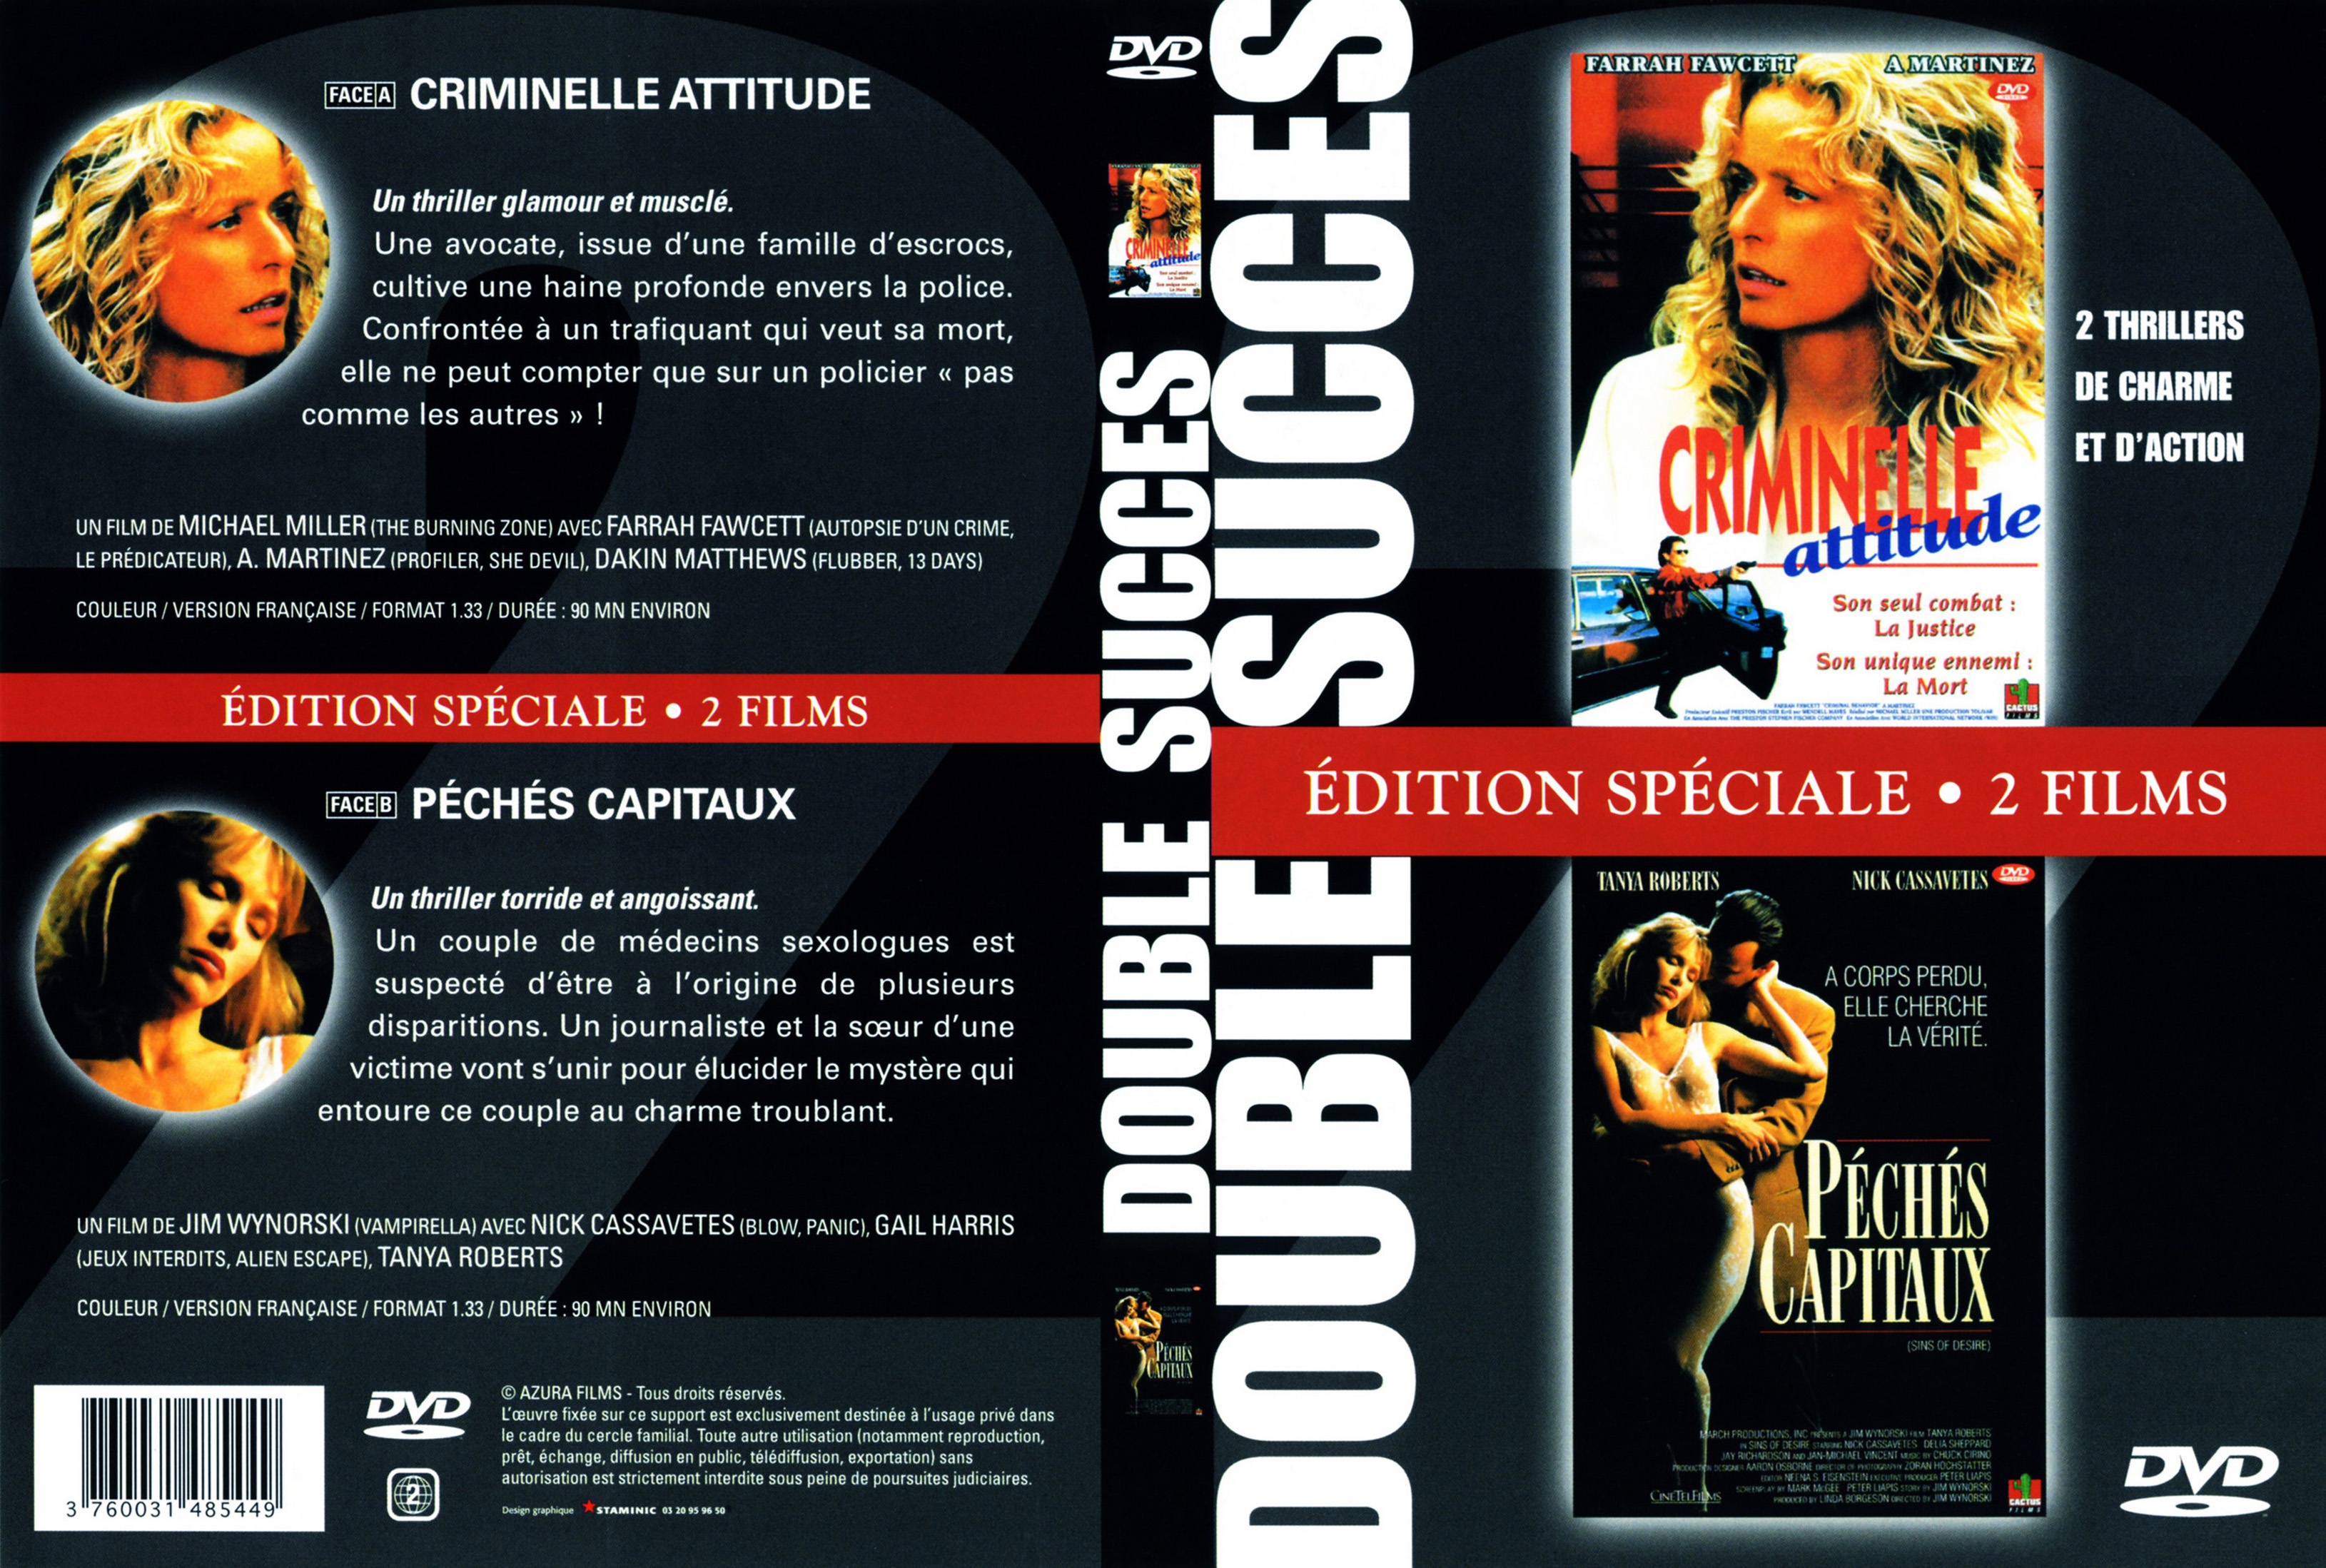 Jaquette DVD Criminelle attitude + Pchs capitaux